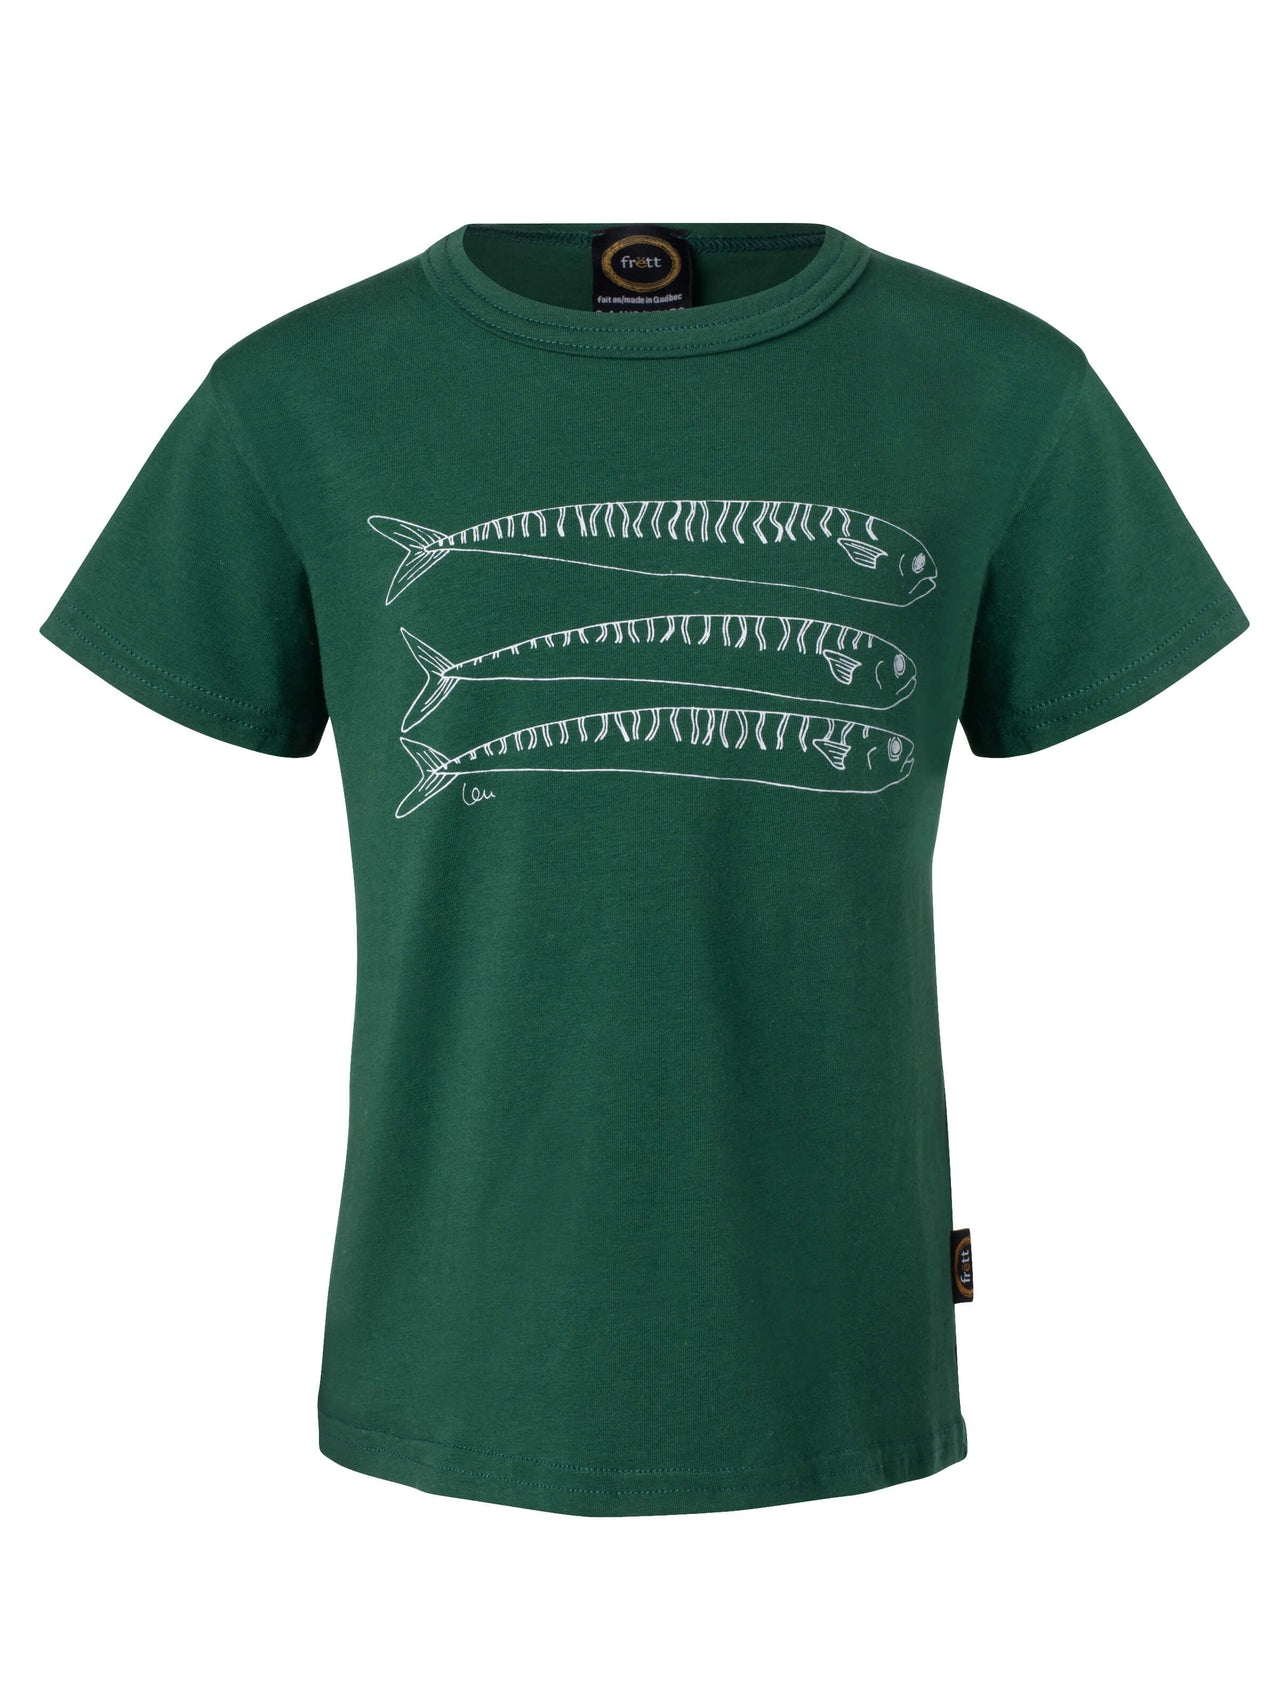 T-shirt enfant-UNISEXE maquereaux-coton bio- vert-unisexe-ghost-FC10